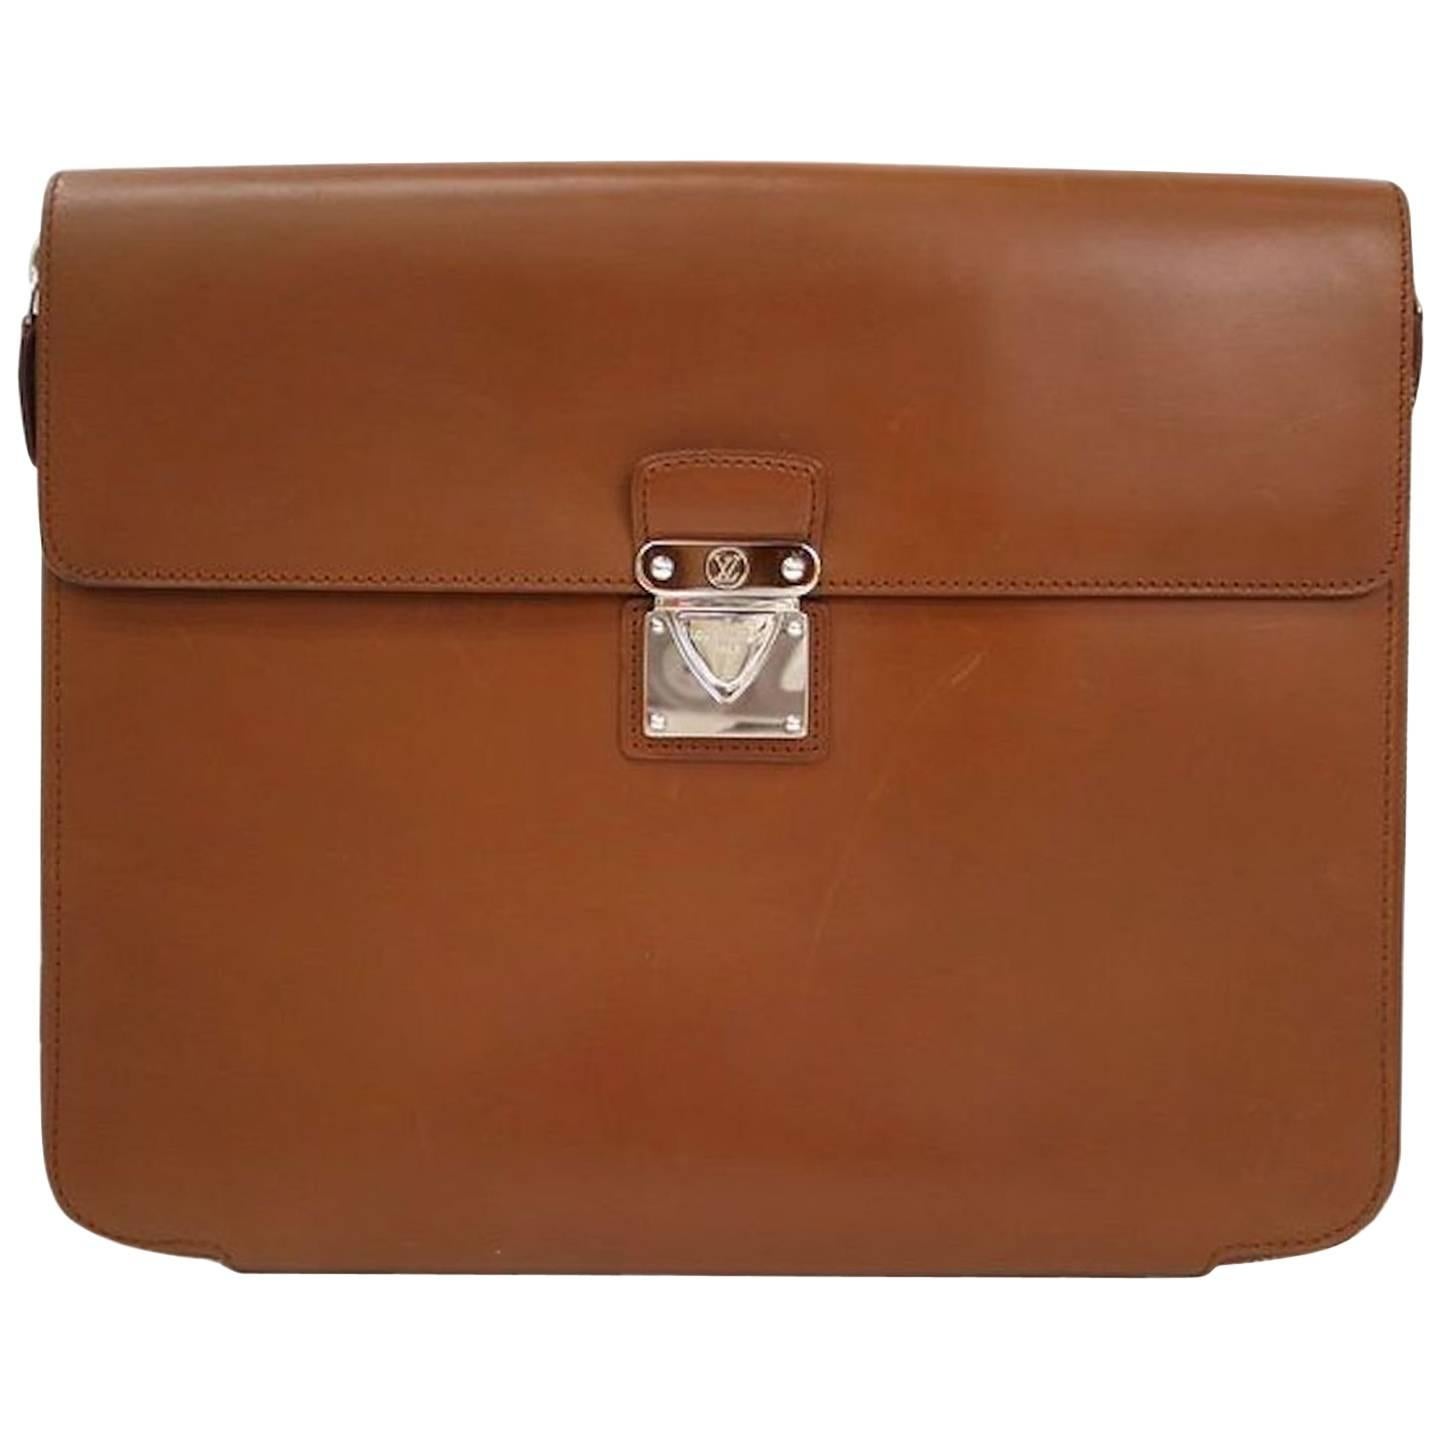 Louis Vuitton Cognac Leather Silver Men's Travel Attache Tech Business Case Bag